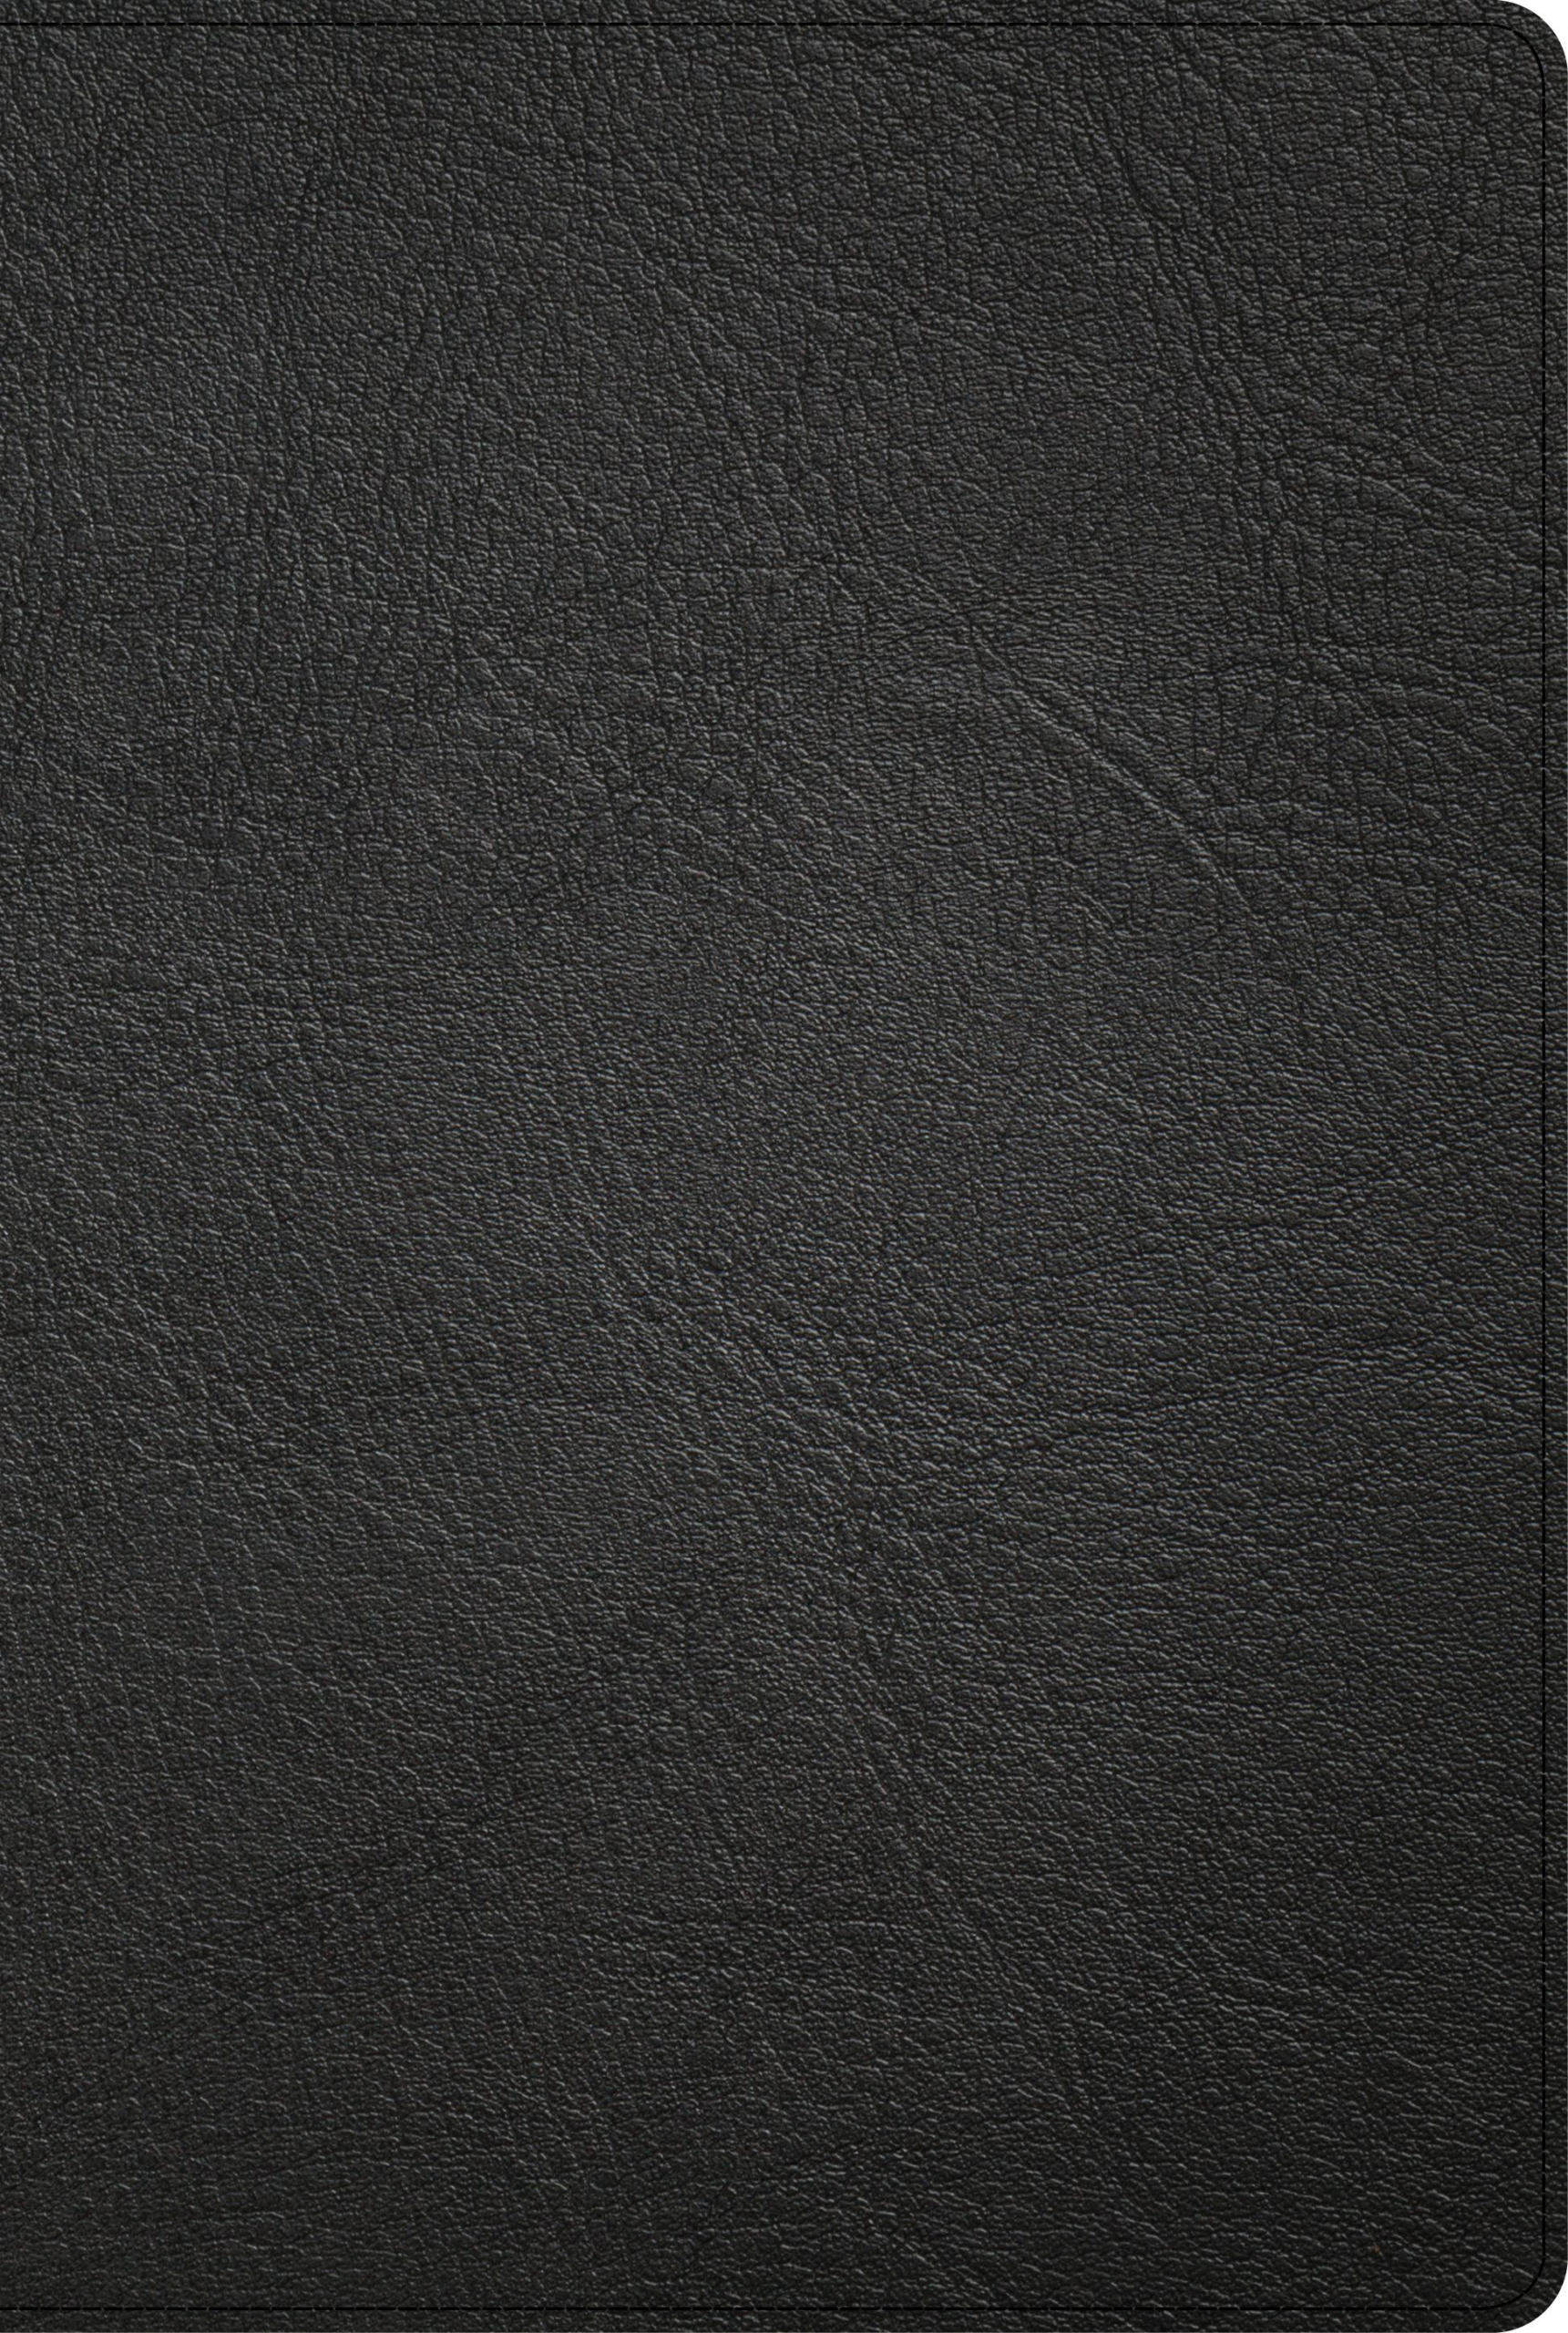 KJV Pastor’s Bible, Black Genuine Leather